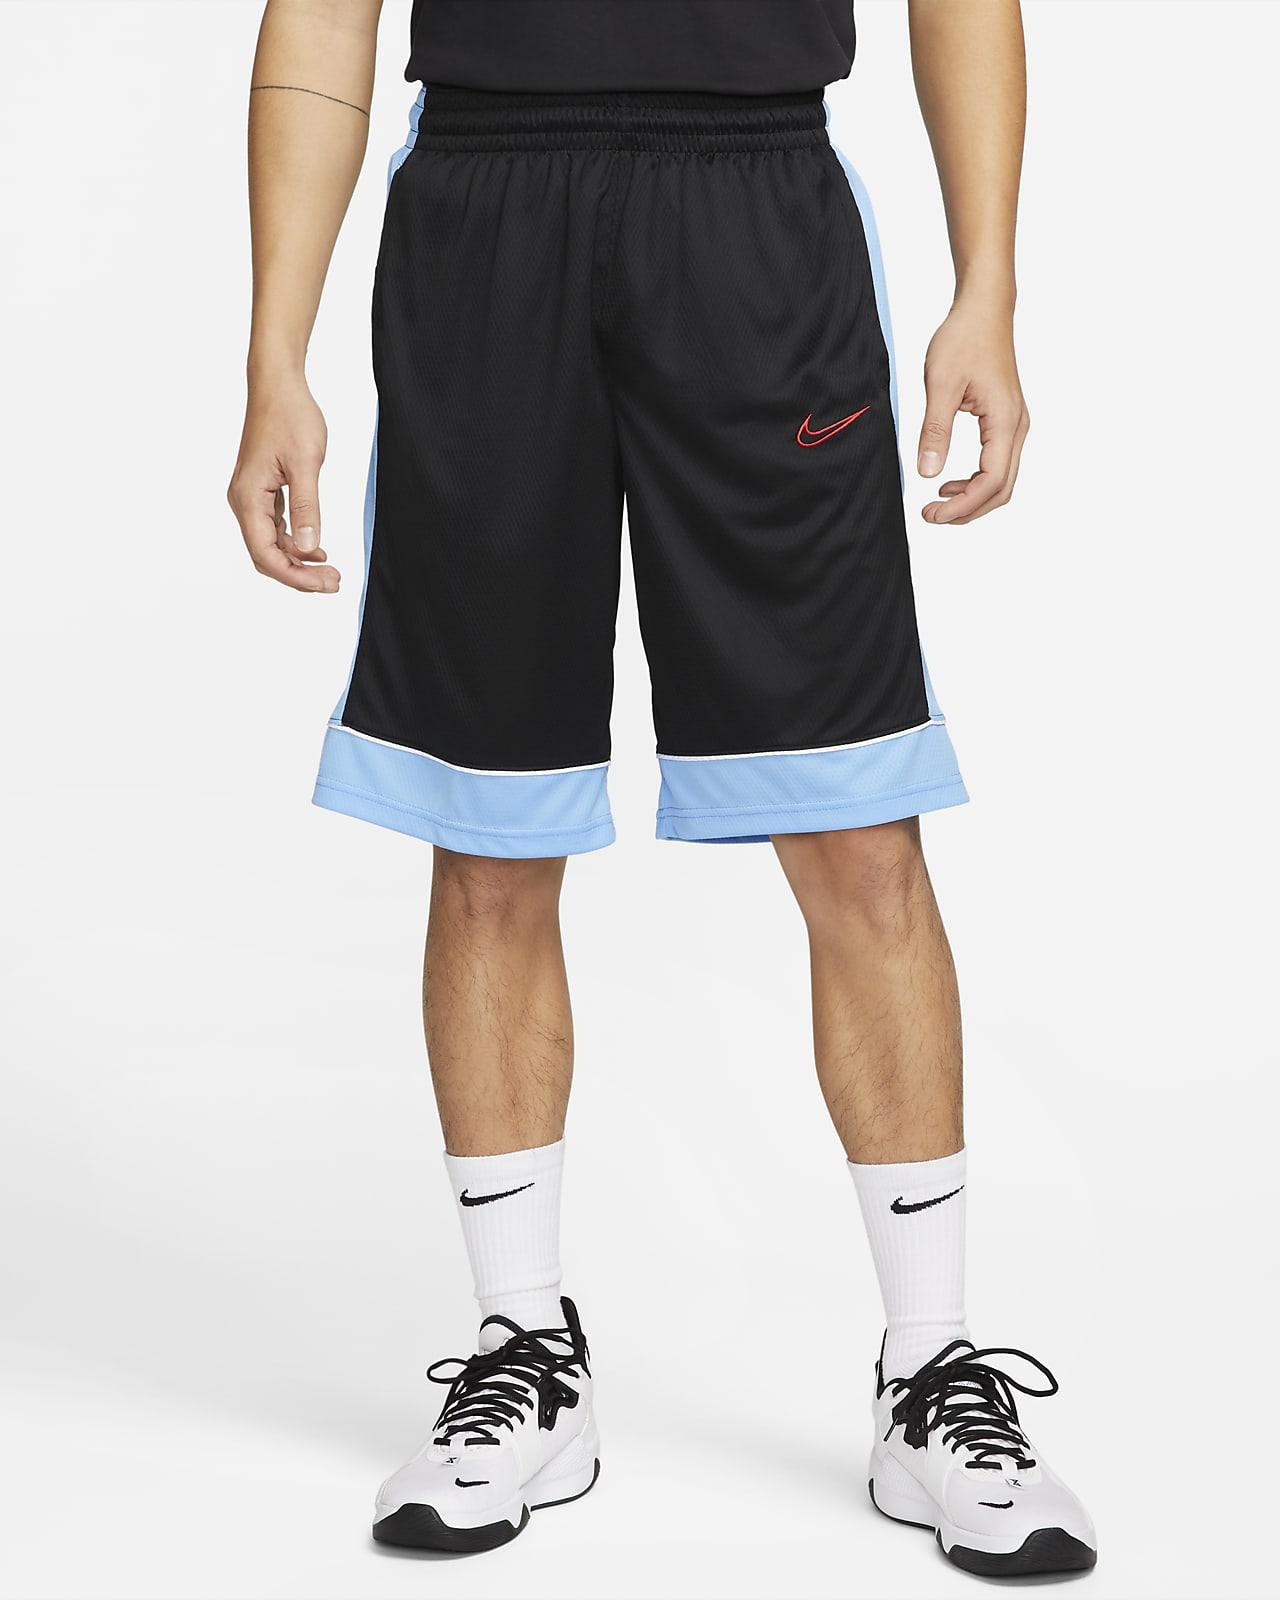 Shorts de básquetbol para hombre Nike